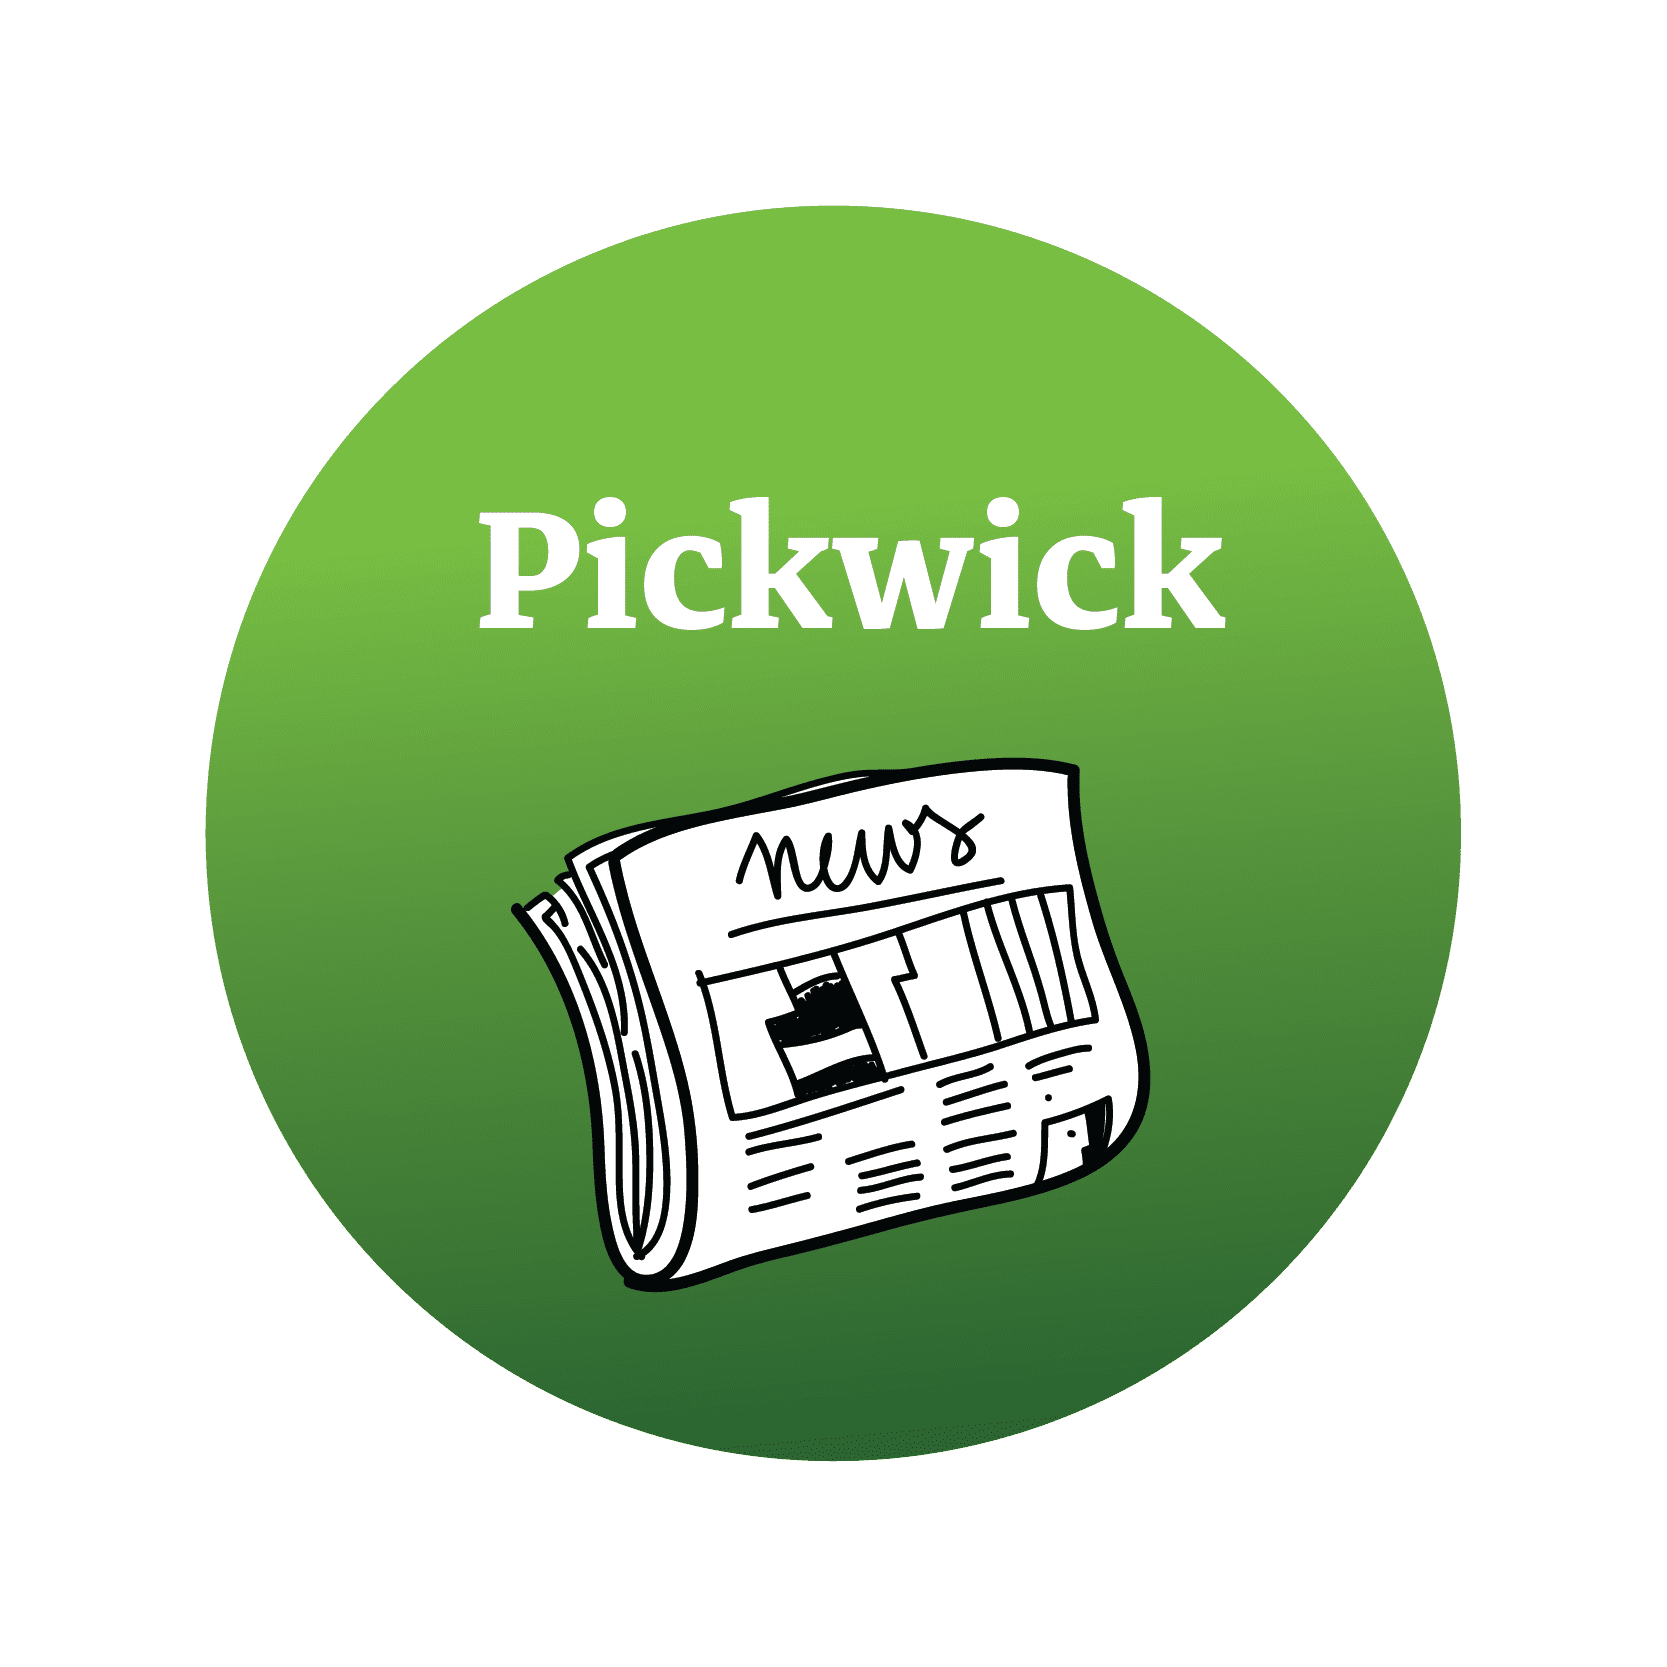 pickwick logo - shorne houses